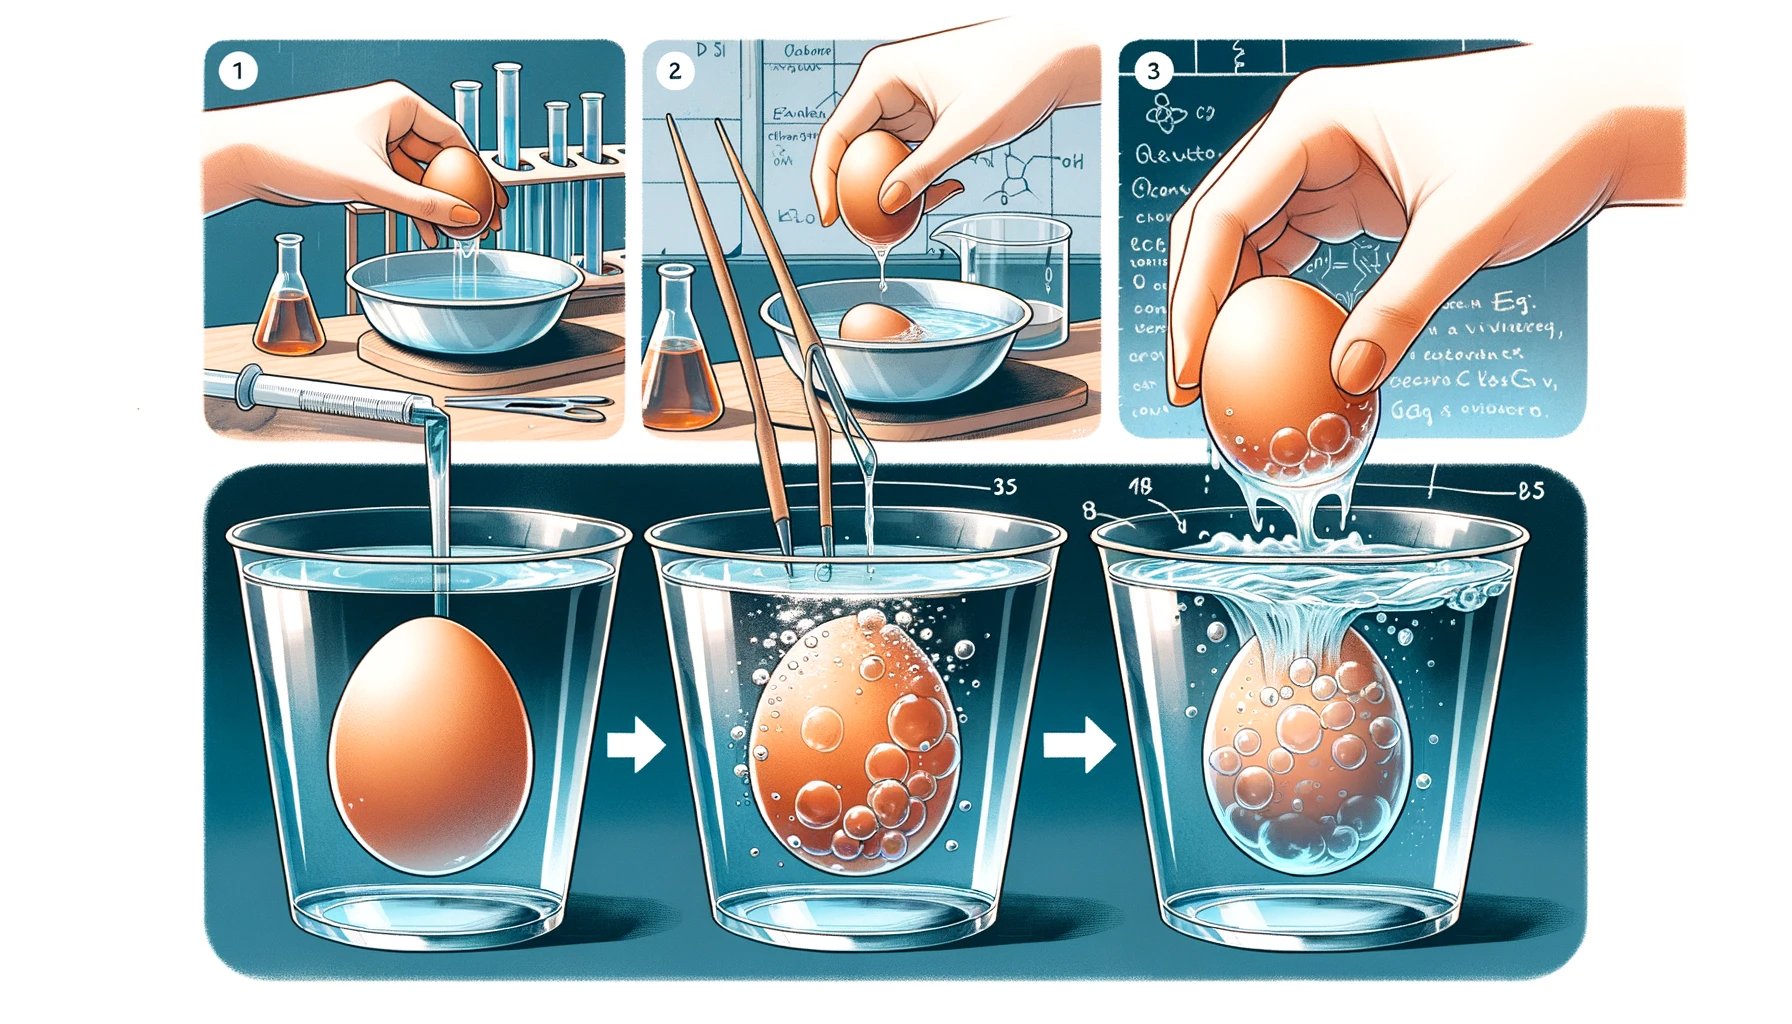 como realizar el experimento del huevo en vinagre paso a paso